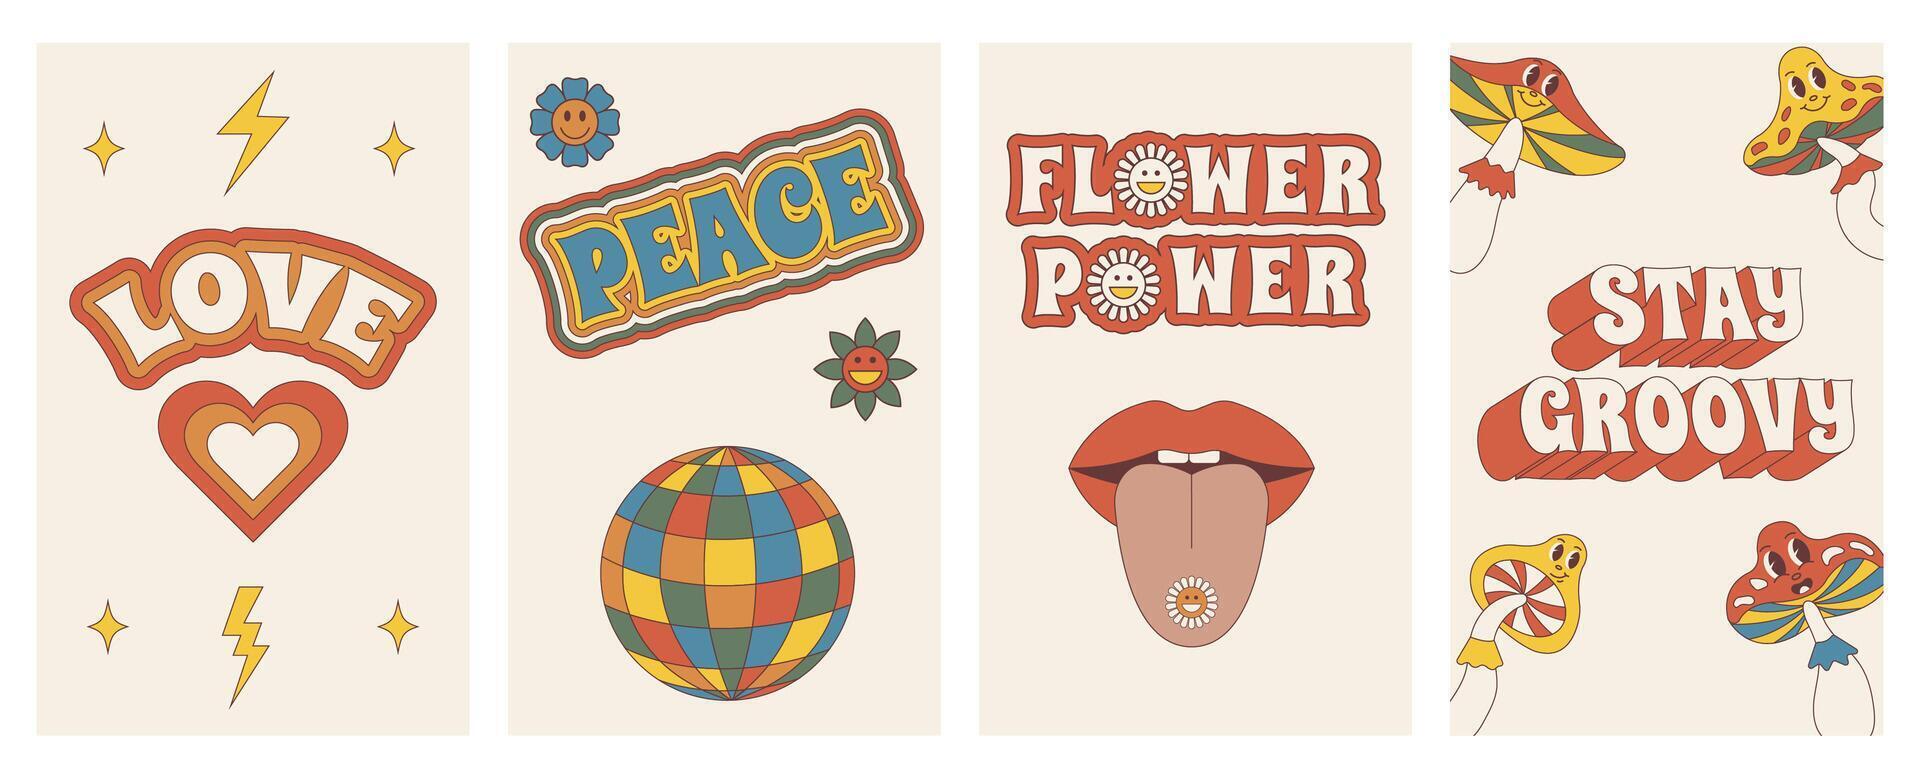 groovy affiches. reeks van posters in modieus retro trippy stijl. hippie jaren 60, jaren 70 stijl. vector